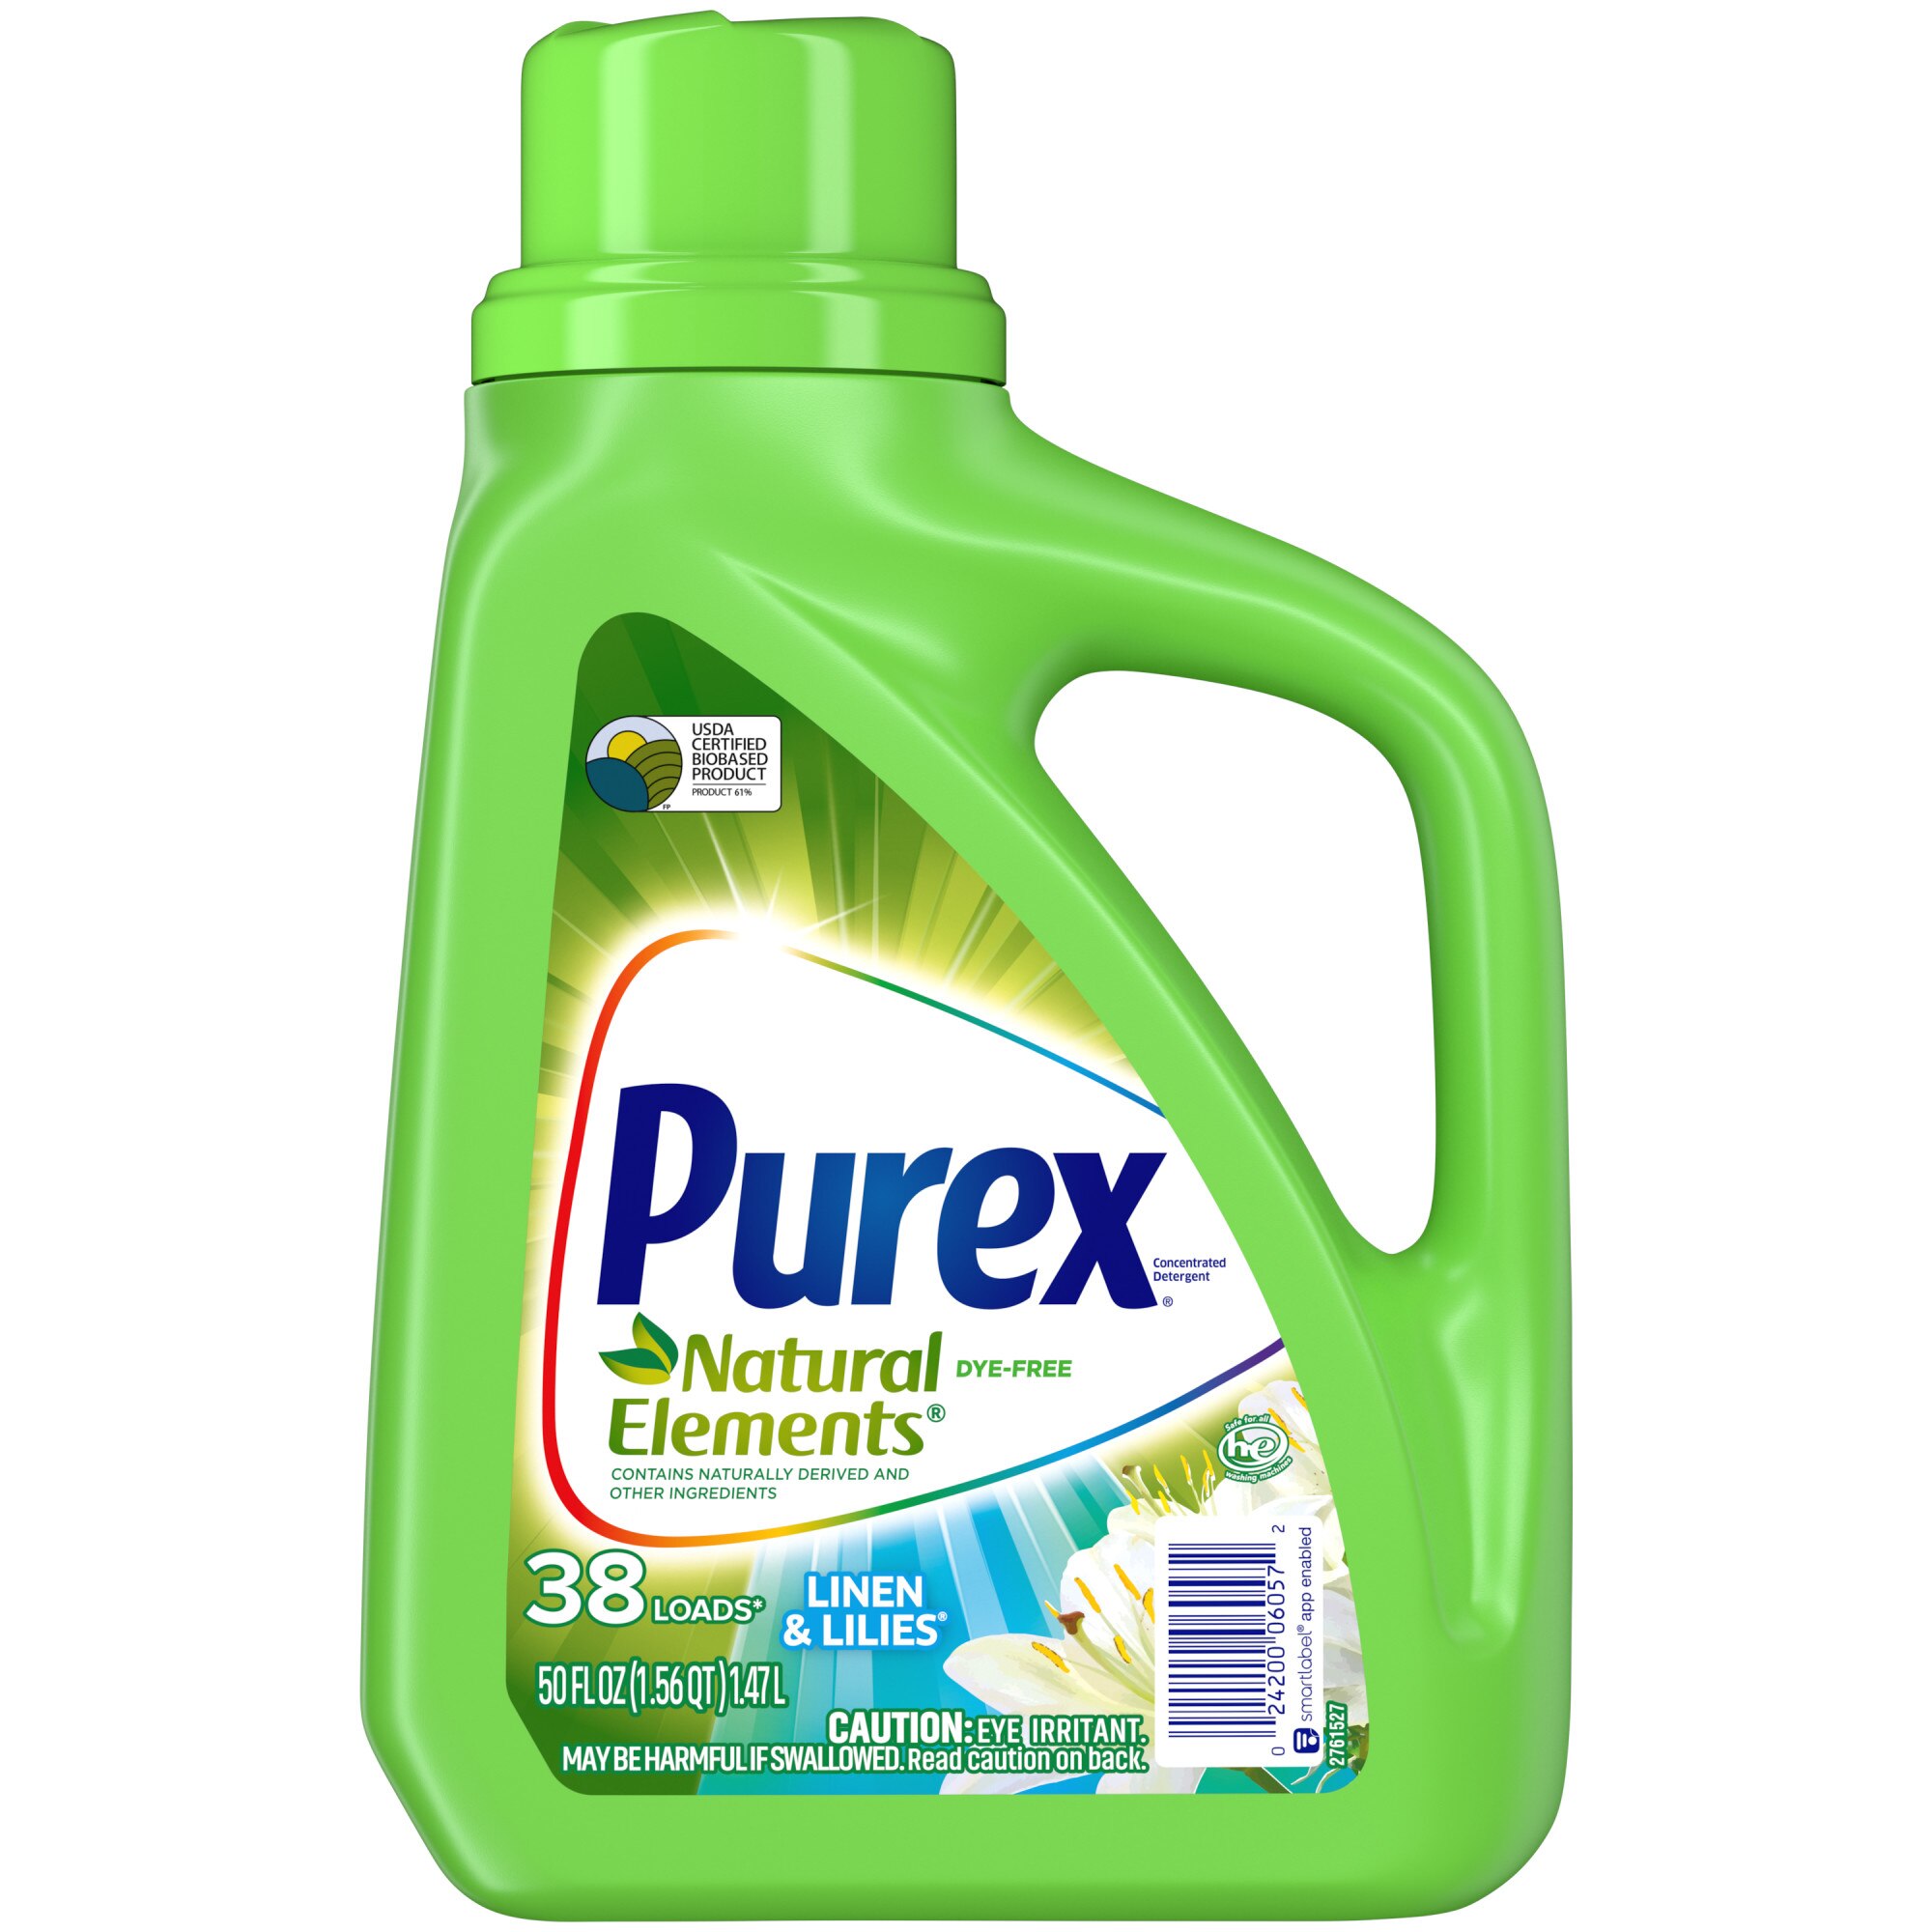 Purex Laundry Detergent Linen & Lilies - 50 Oz , CVS